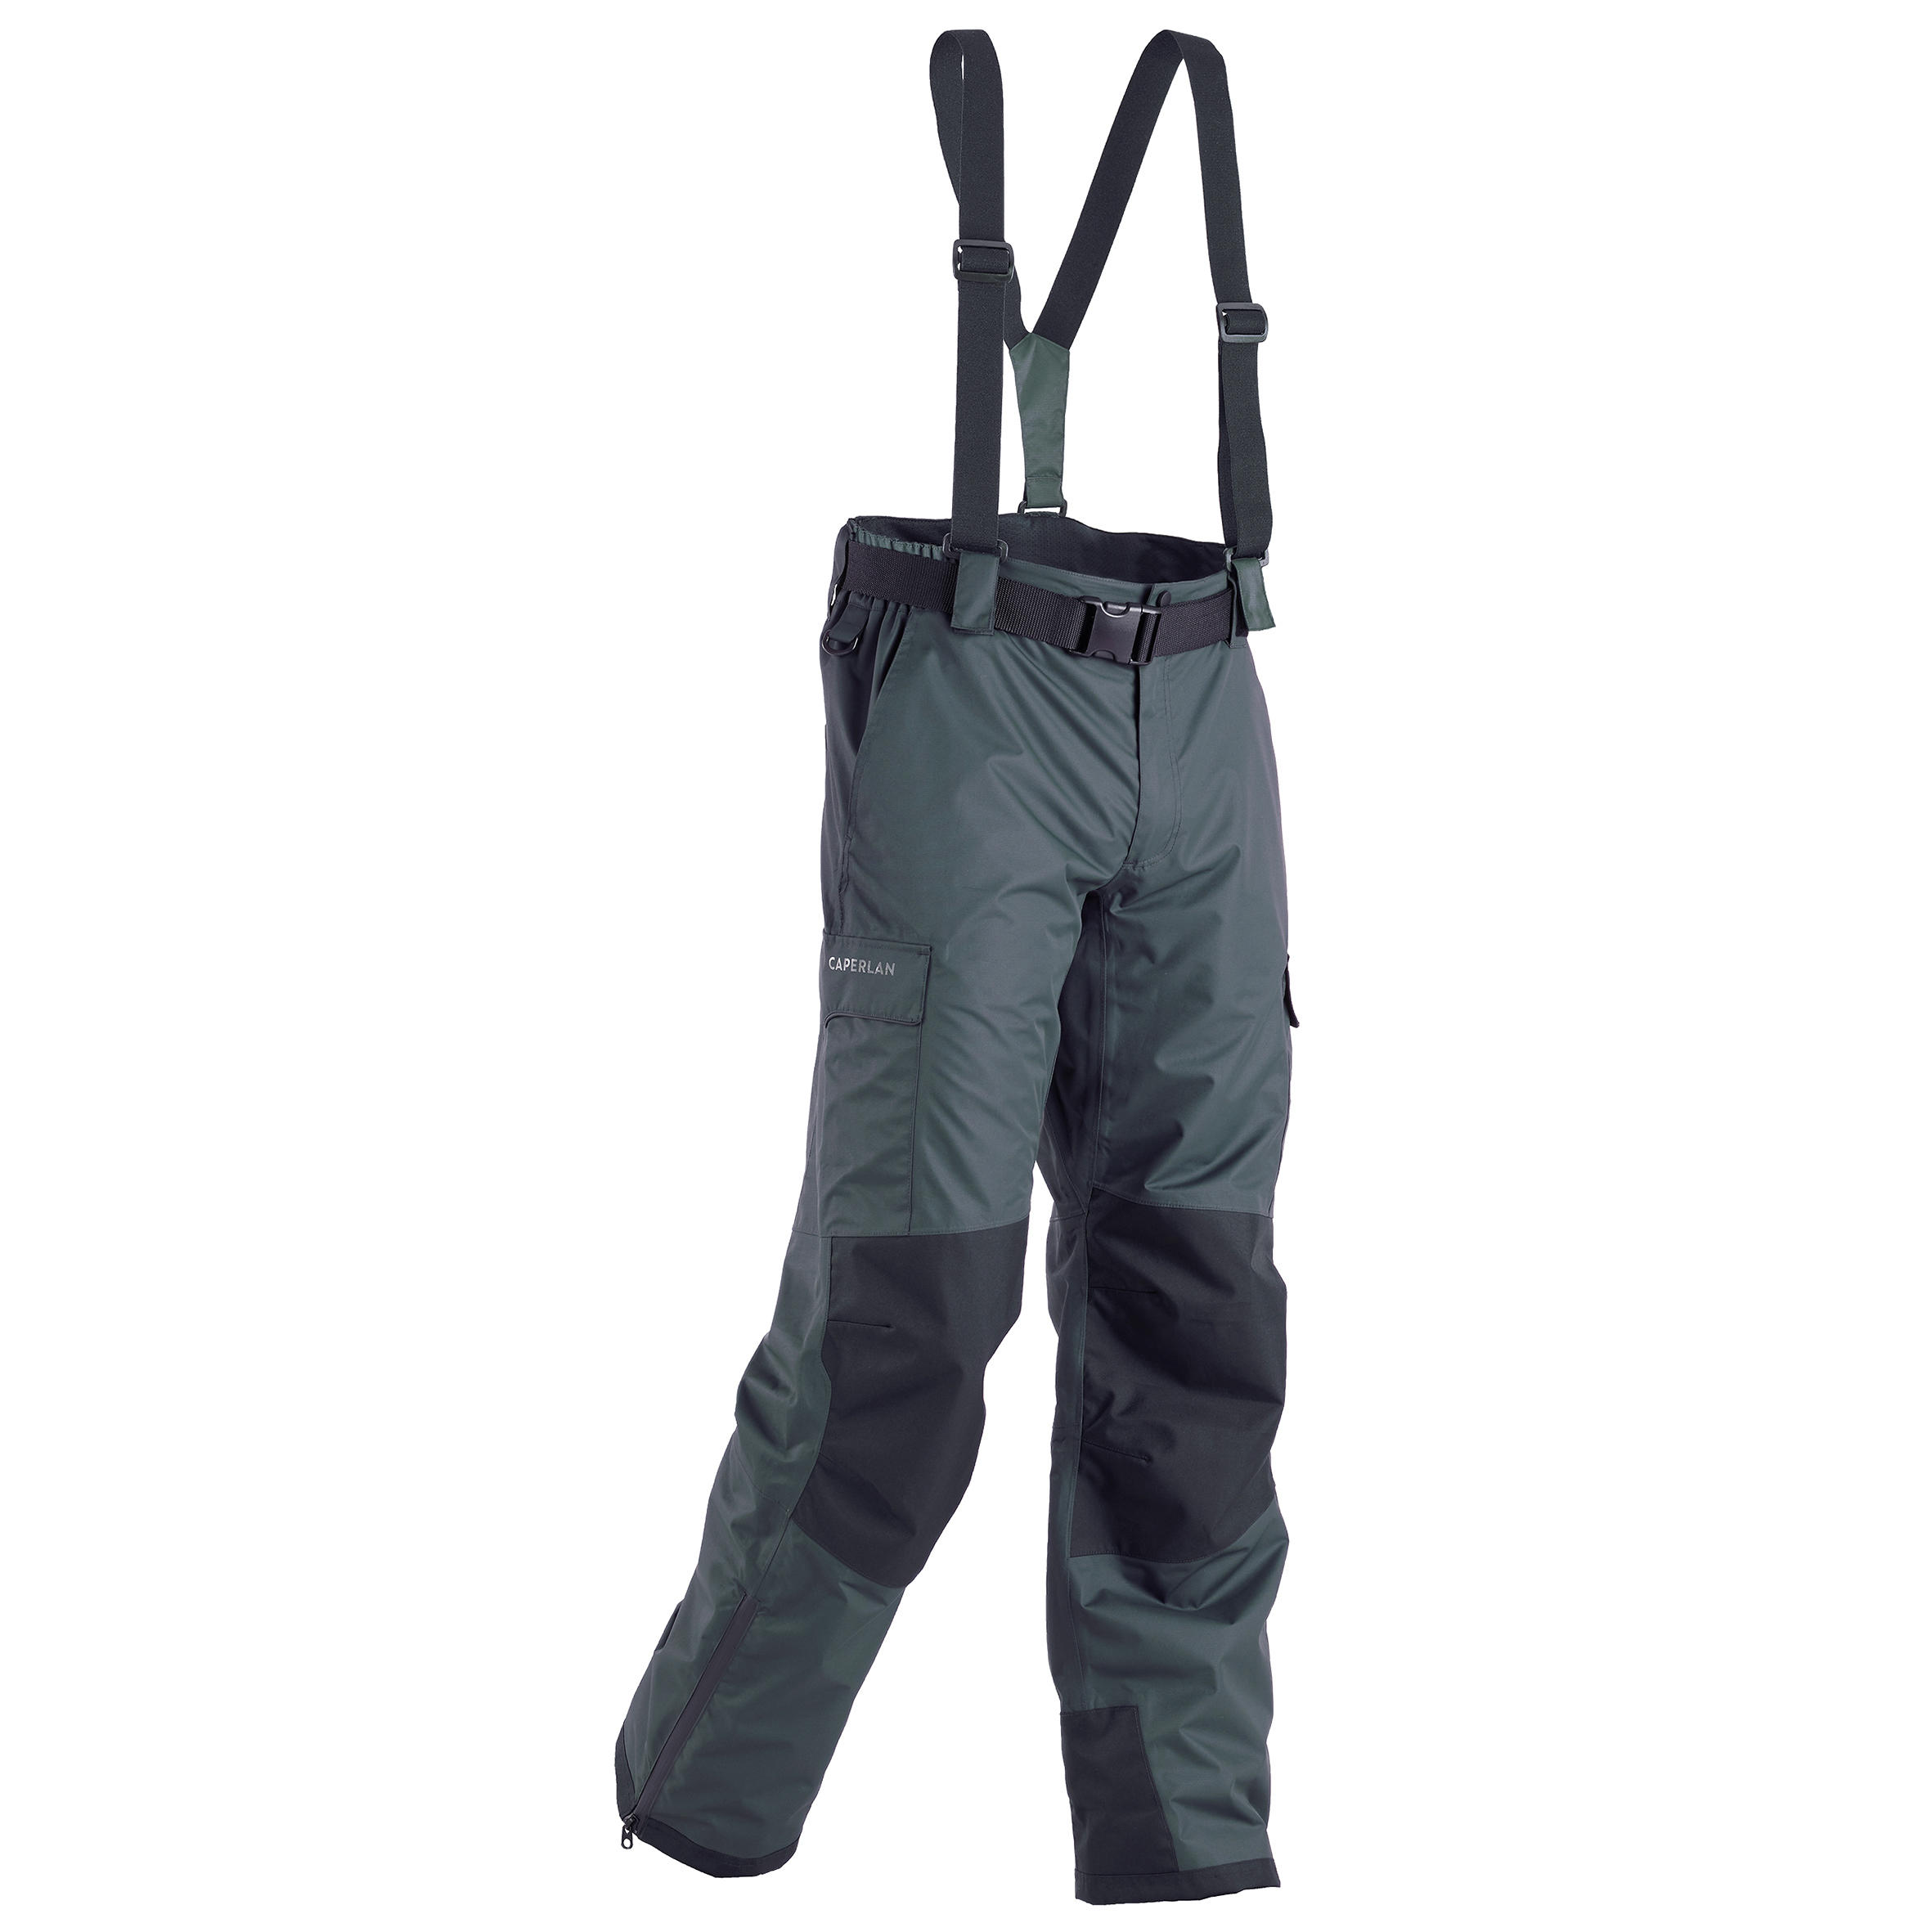 Pantalon de pêche imperméable - 500 gris - CAPERLAN